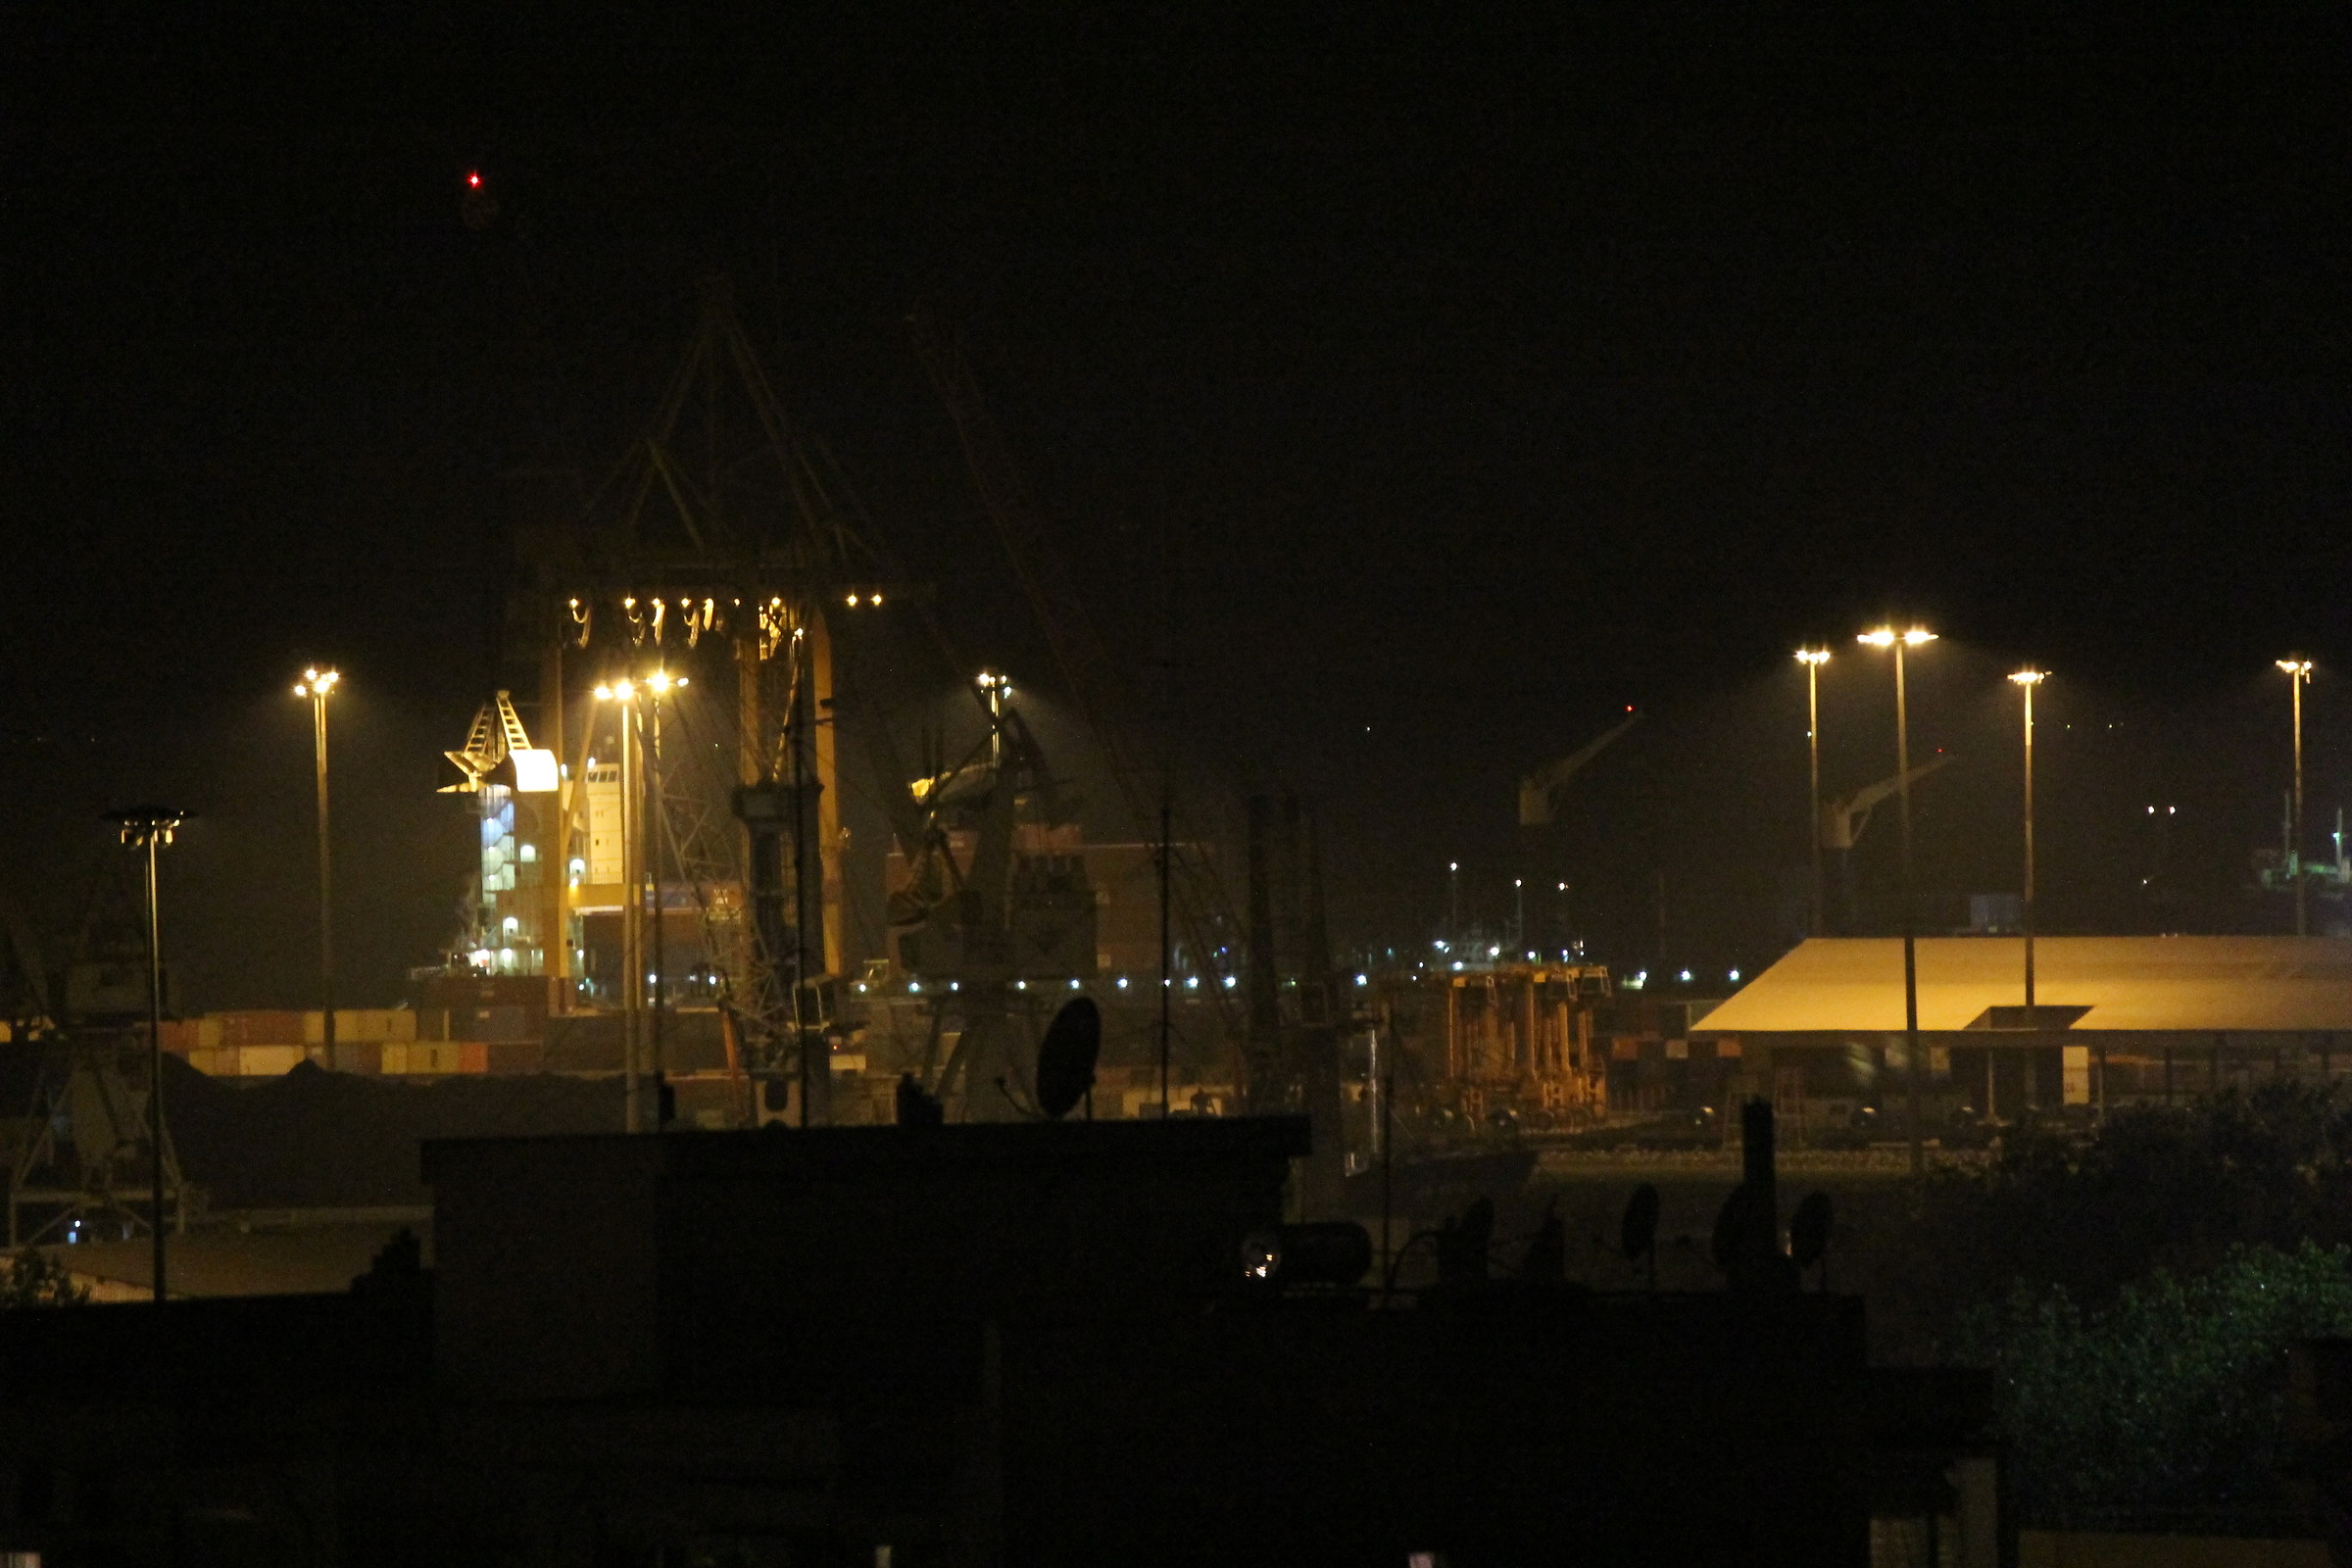 Thessaloniki - Port facilities at night...